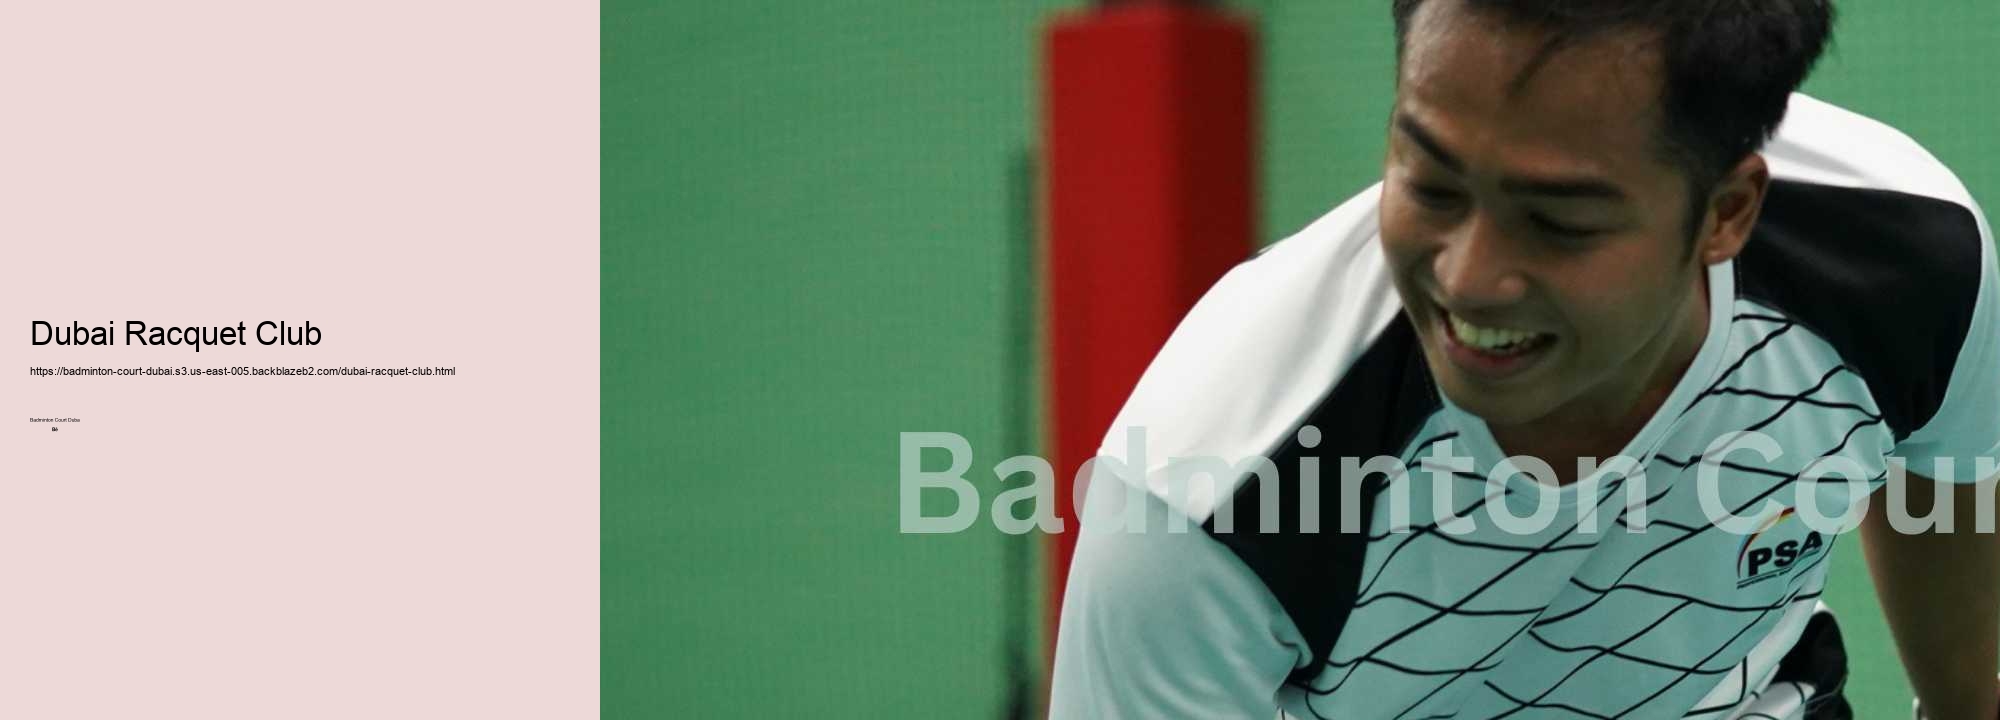 Dubai Racquet Club